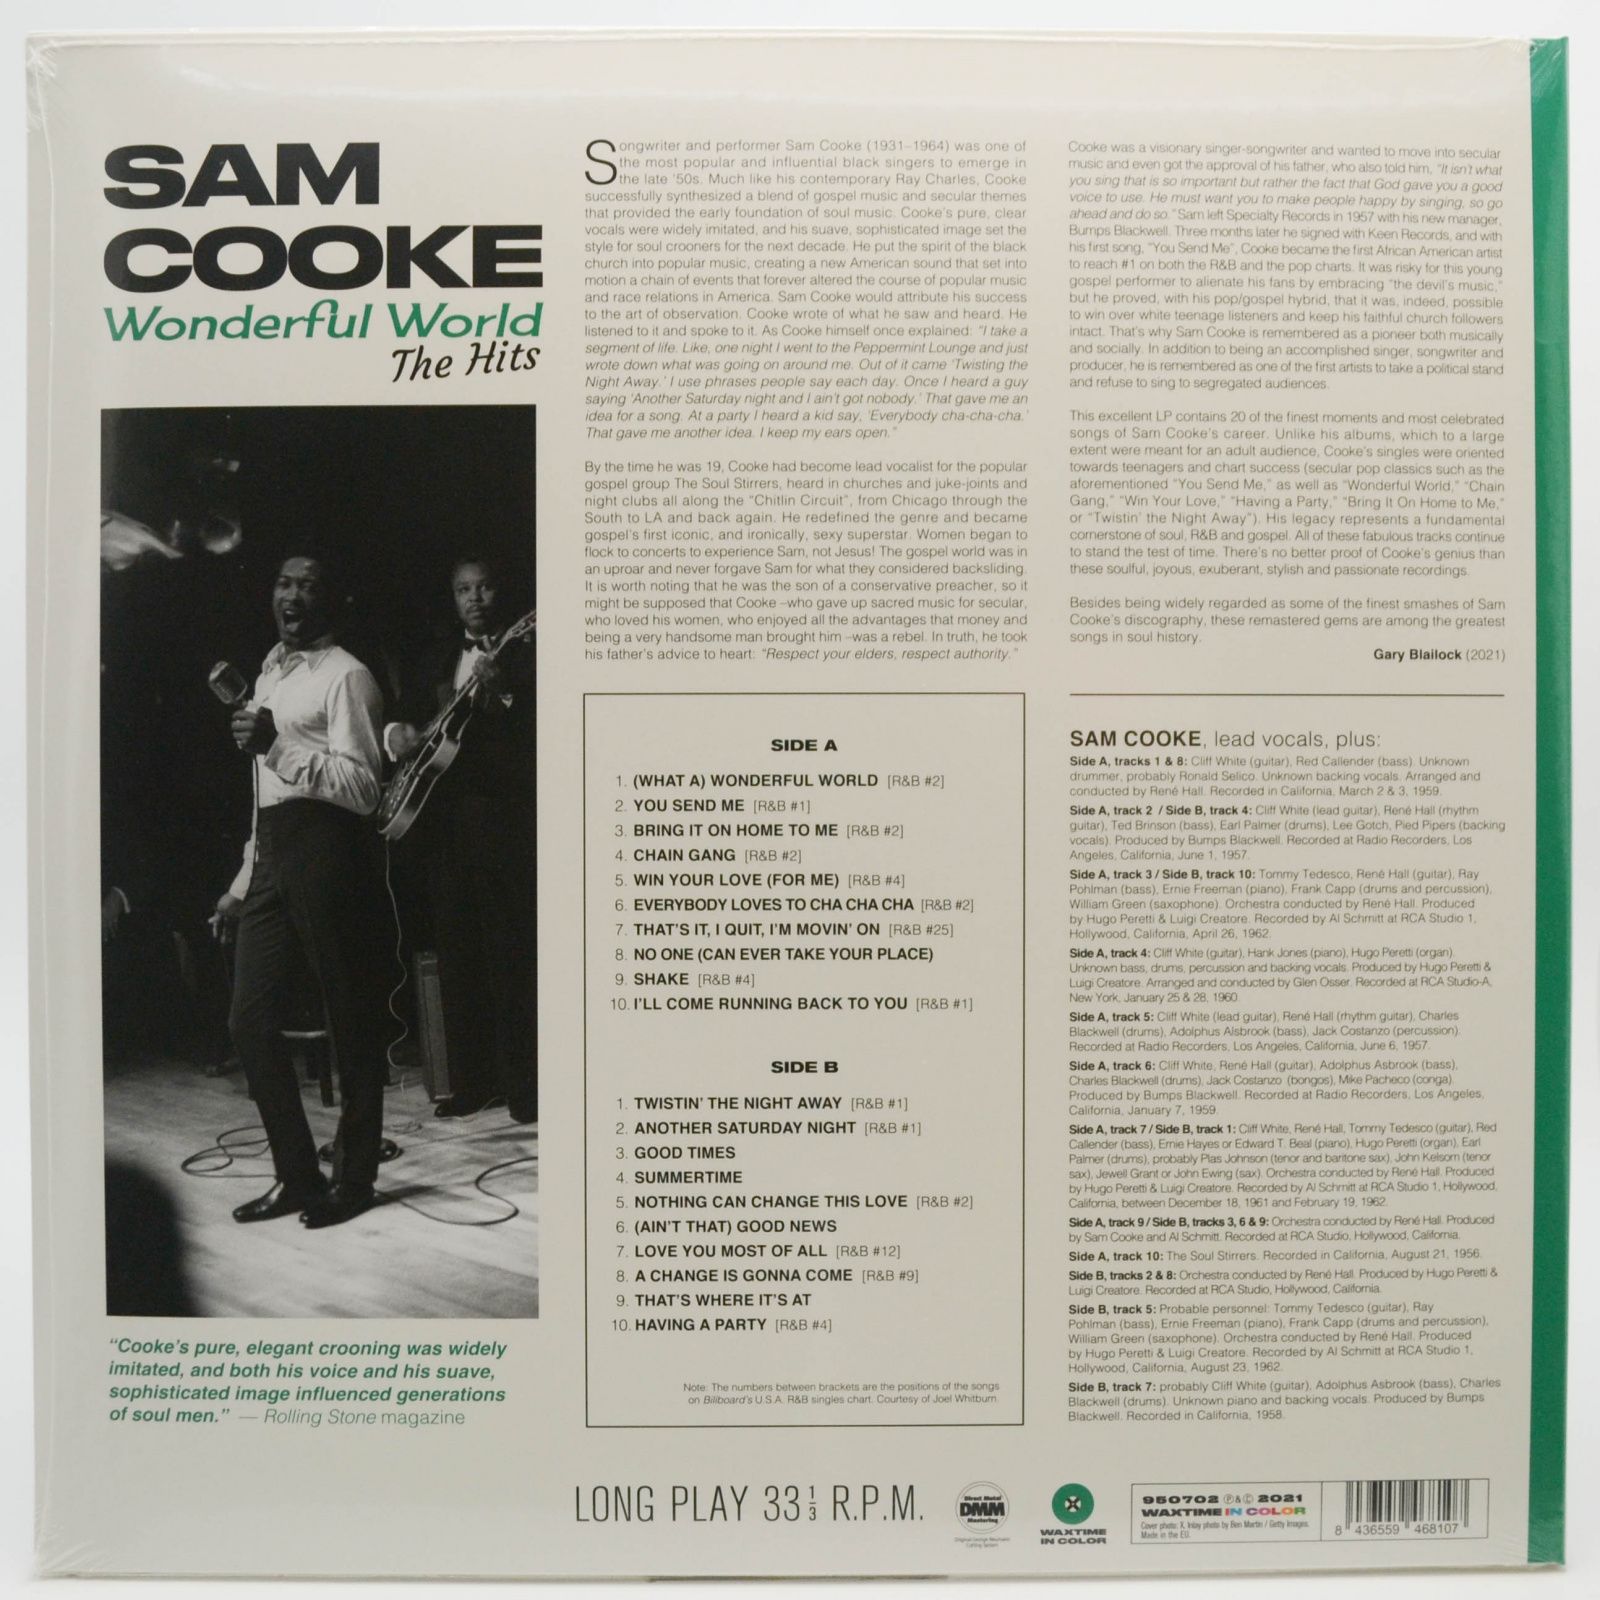 Sam Cooke — Wonderful World (The Hits), 2021